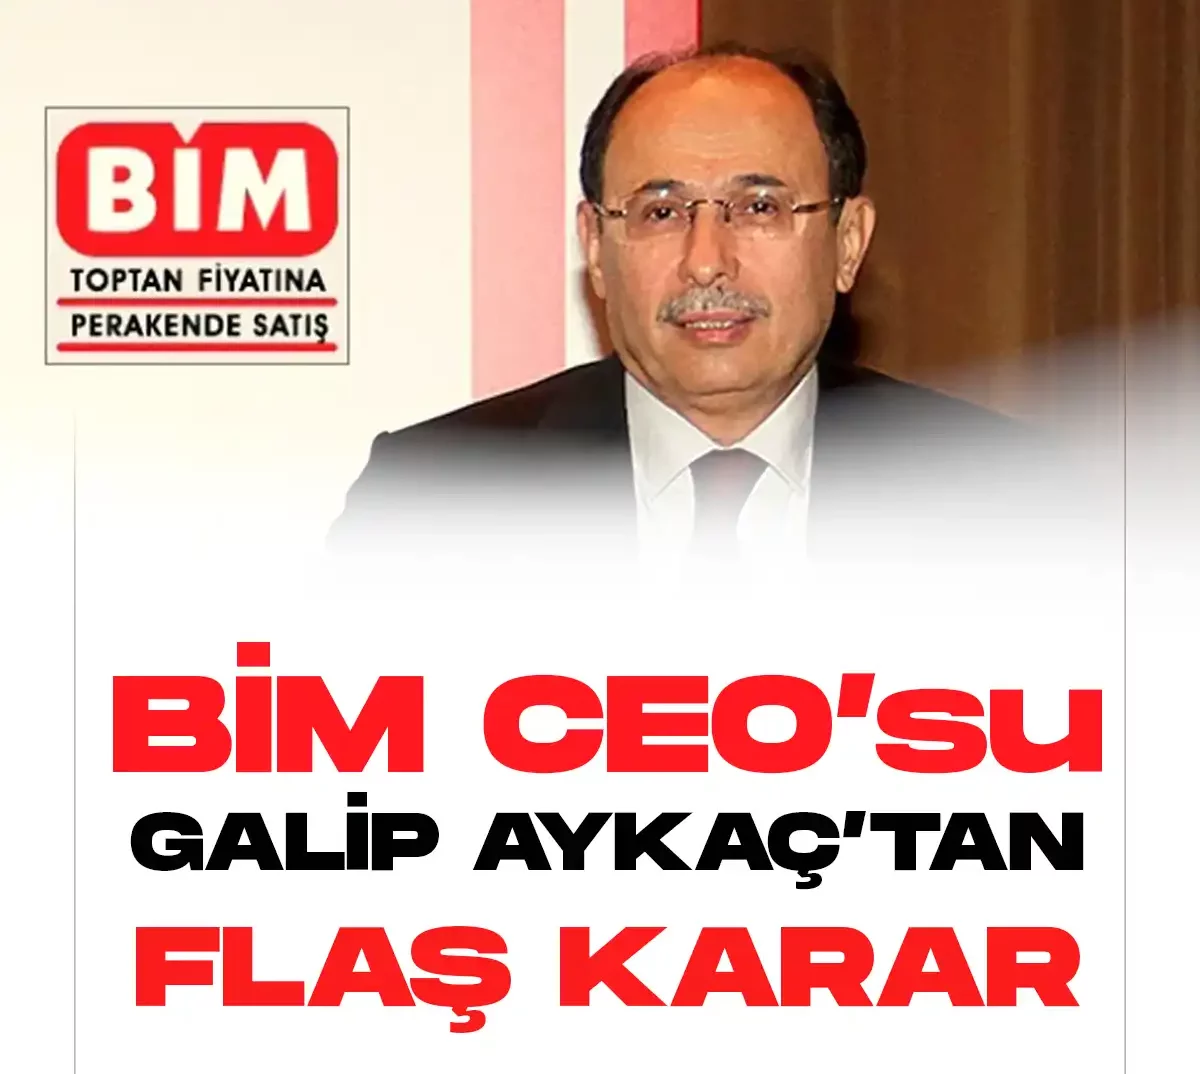 BİM CEO'su Galip Aykaç istifa kararını açıkladı.